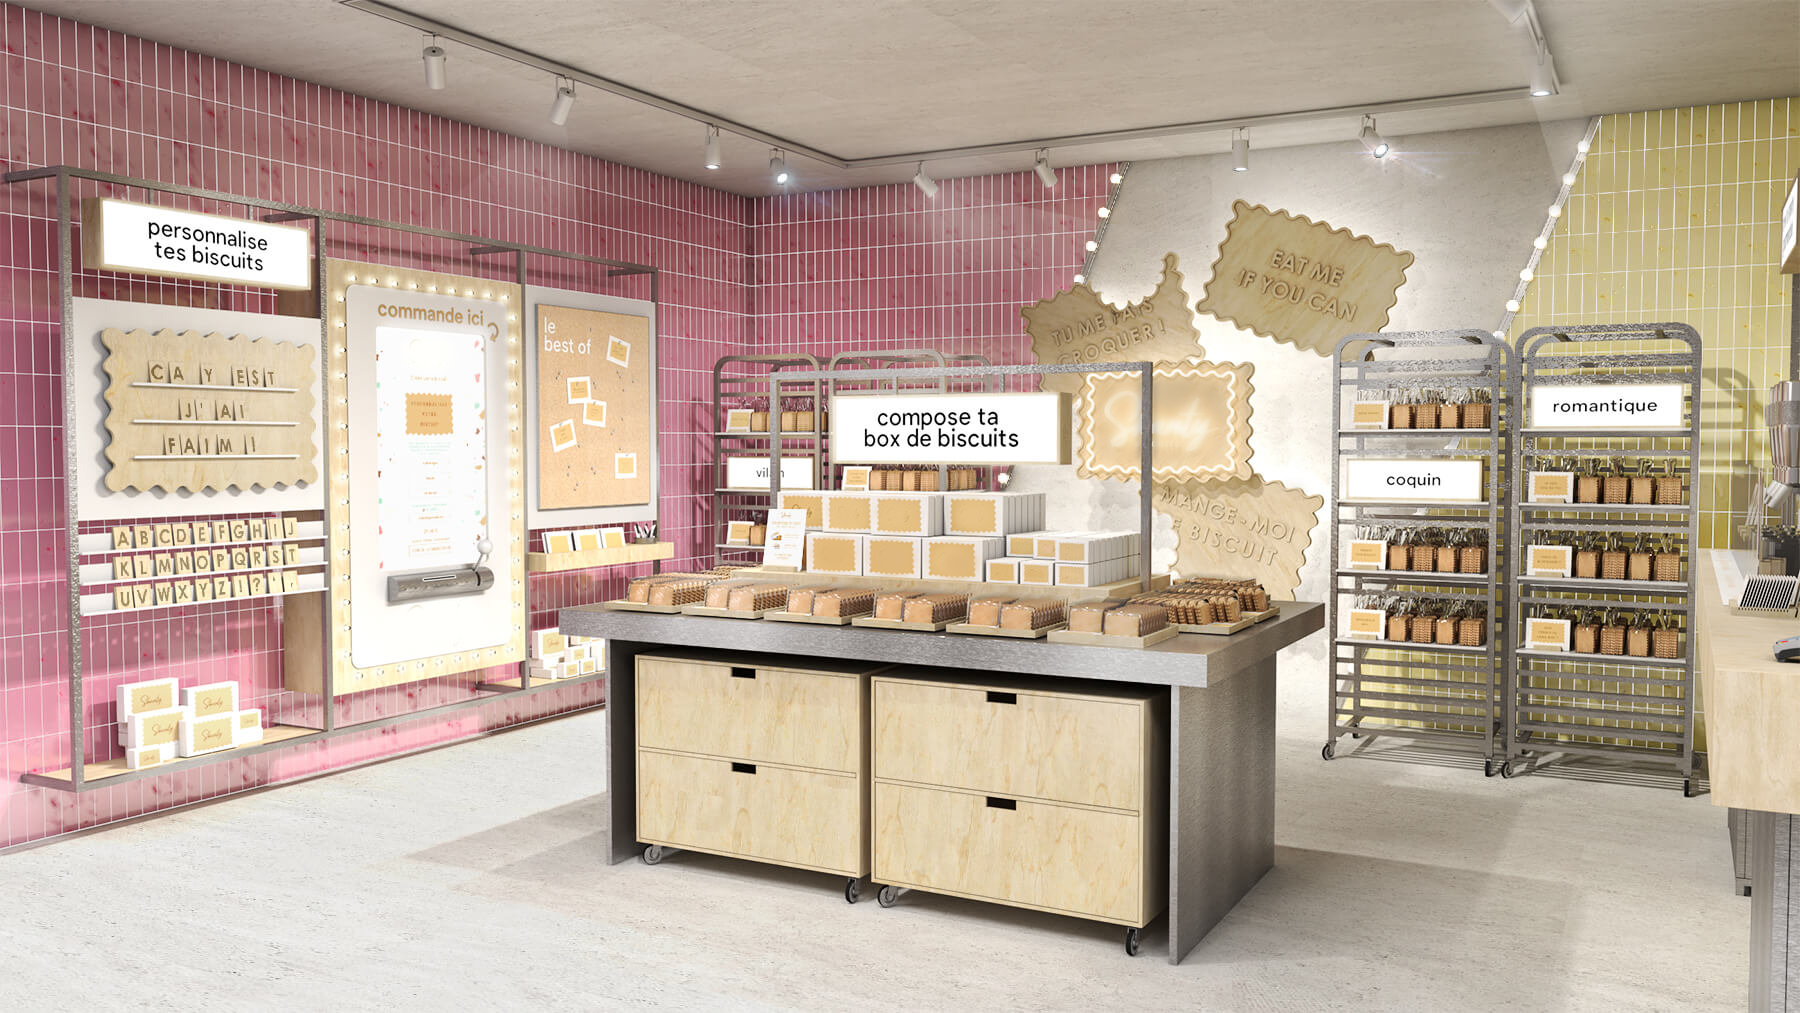 Vue d'ensemble du design retail de la boutique The Biscuit Machine avec son architecture commerciale, ses expériences sensorielles et digitales